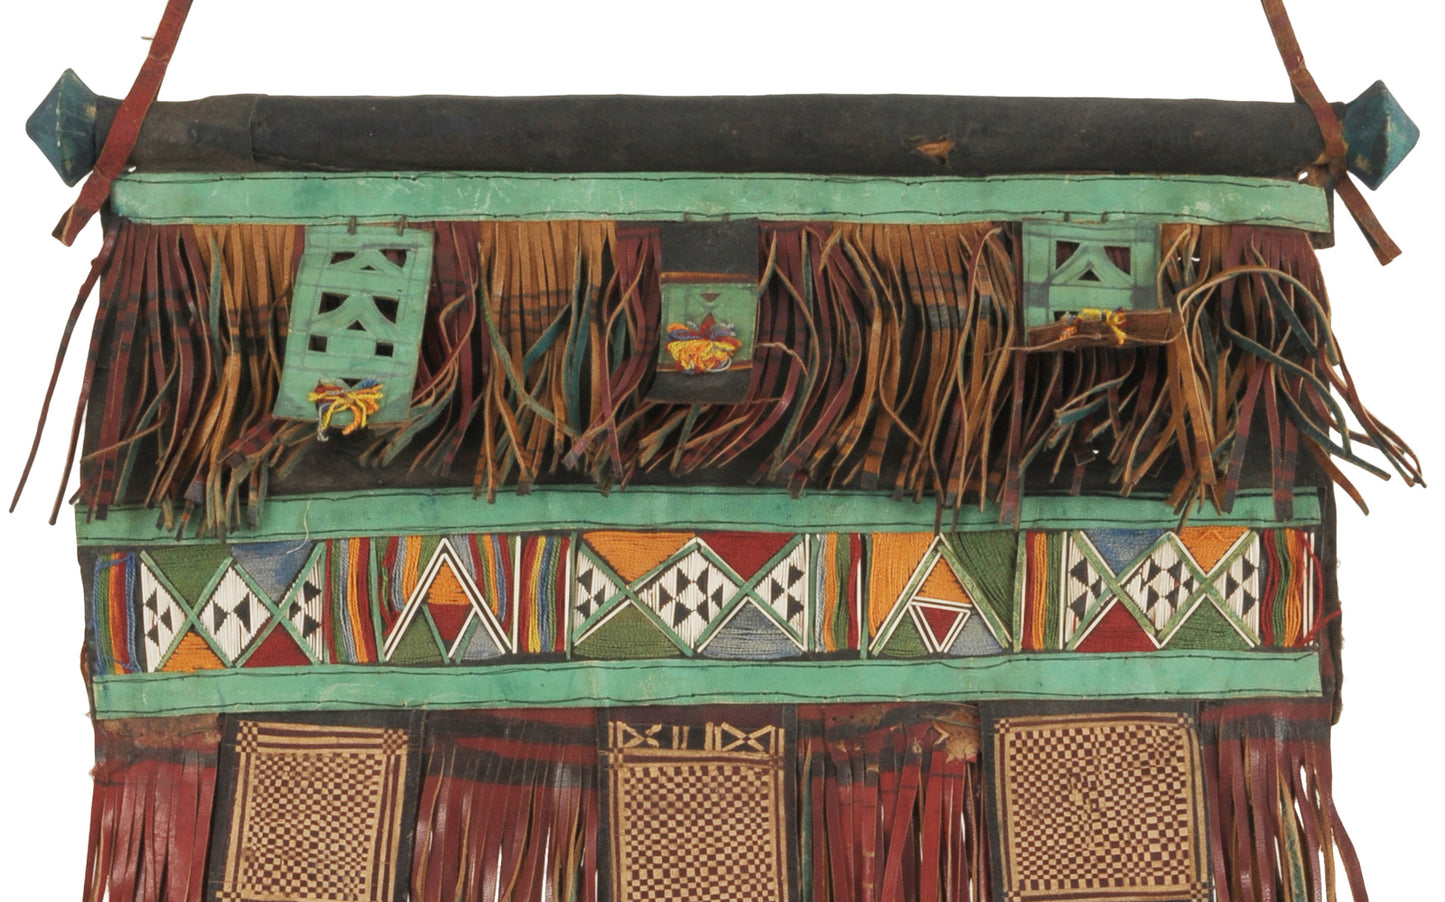 Pannello decorativo per tenda in pelle Tuareg dell'antica arte africana Mali Niger Deserto del Sahara Etnico - Tribalgh